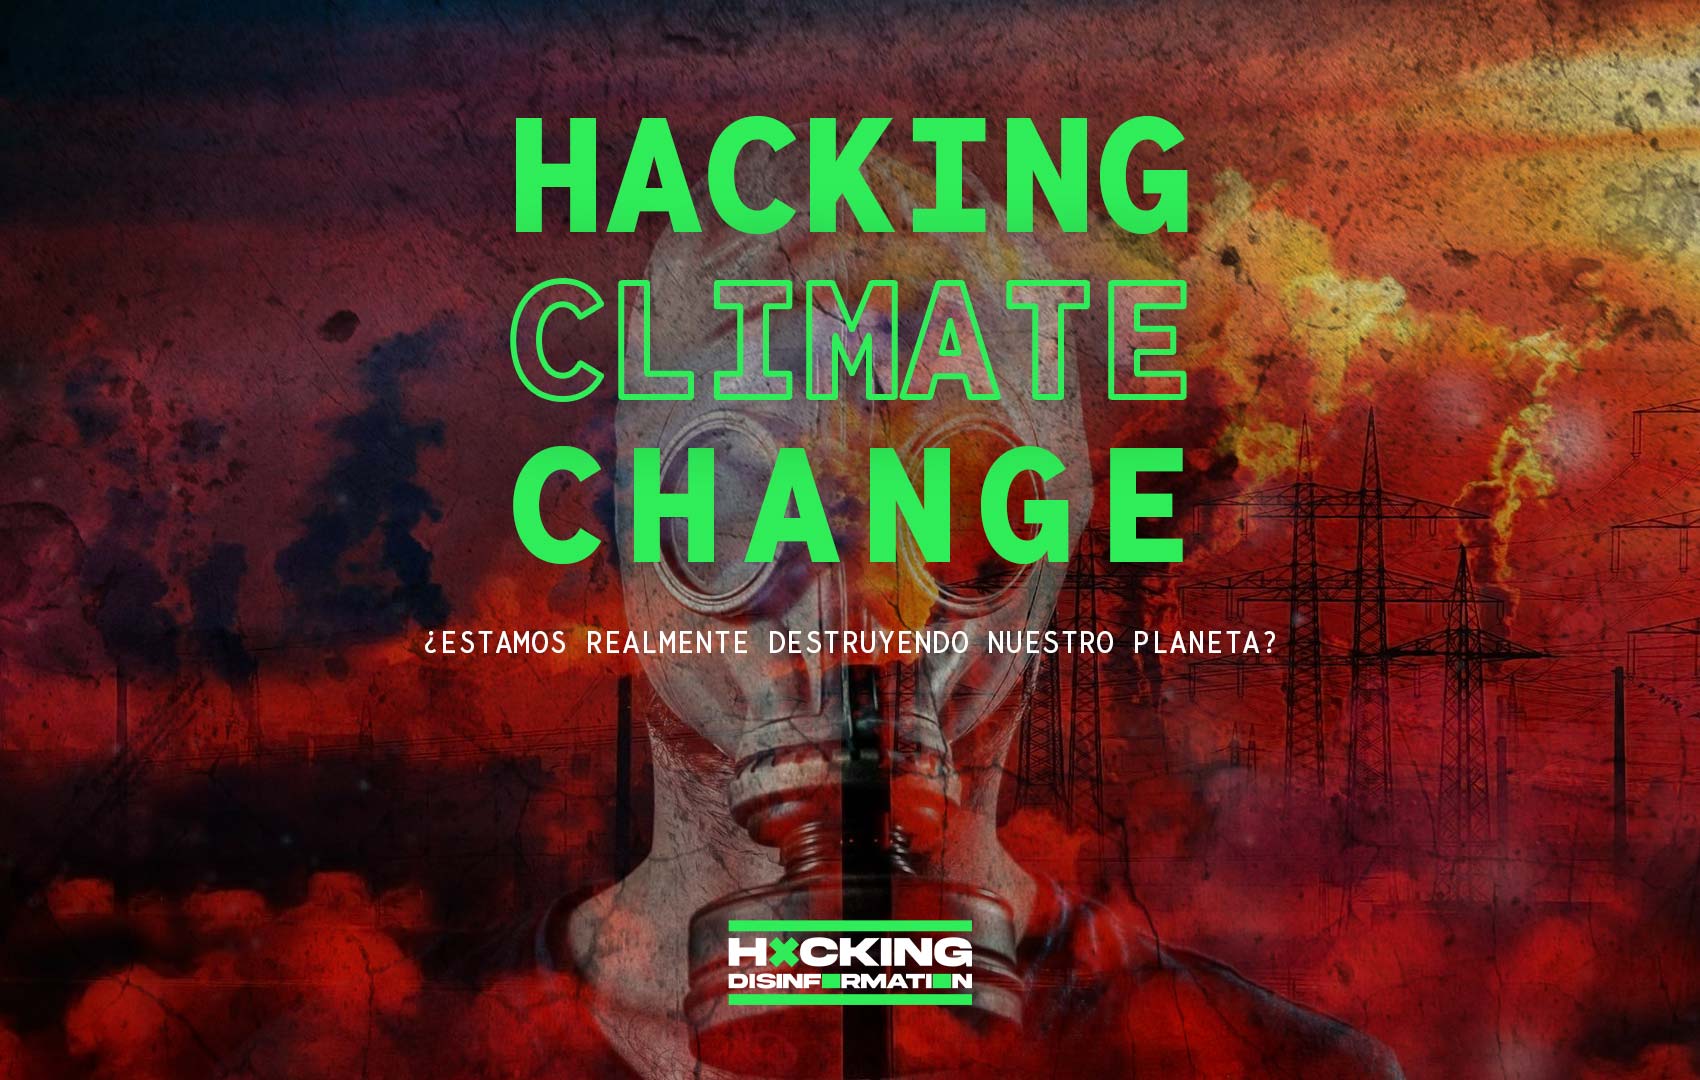 ¿Estamos realmente destruyendo nuestro planeta? – Hacking Climate Change